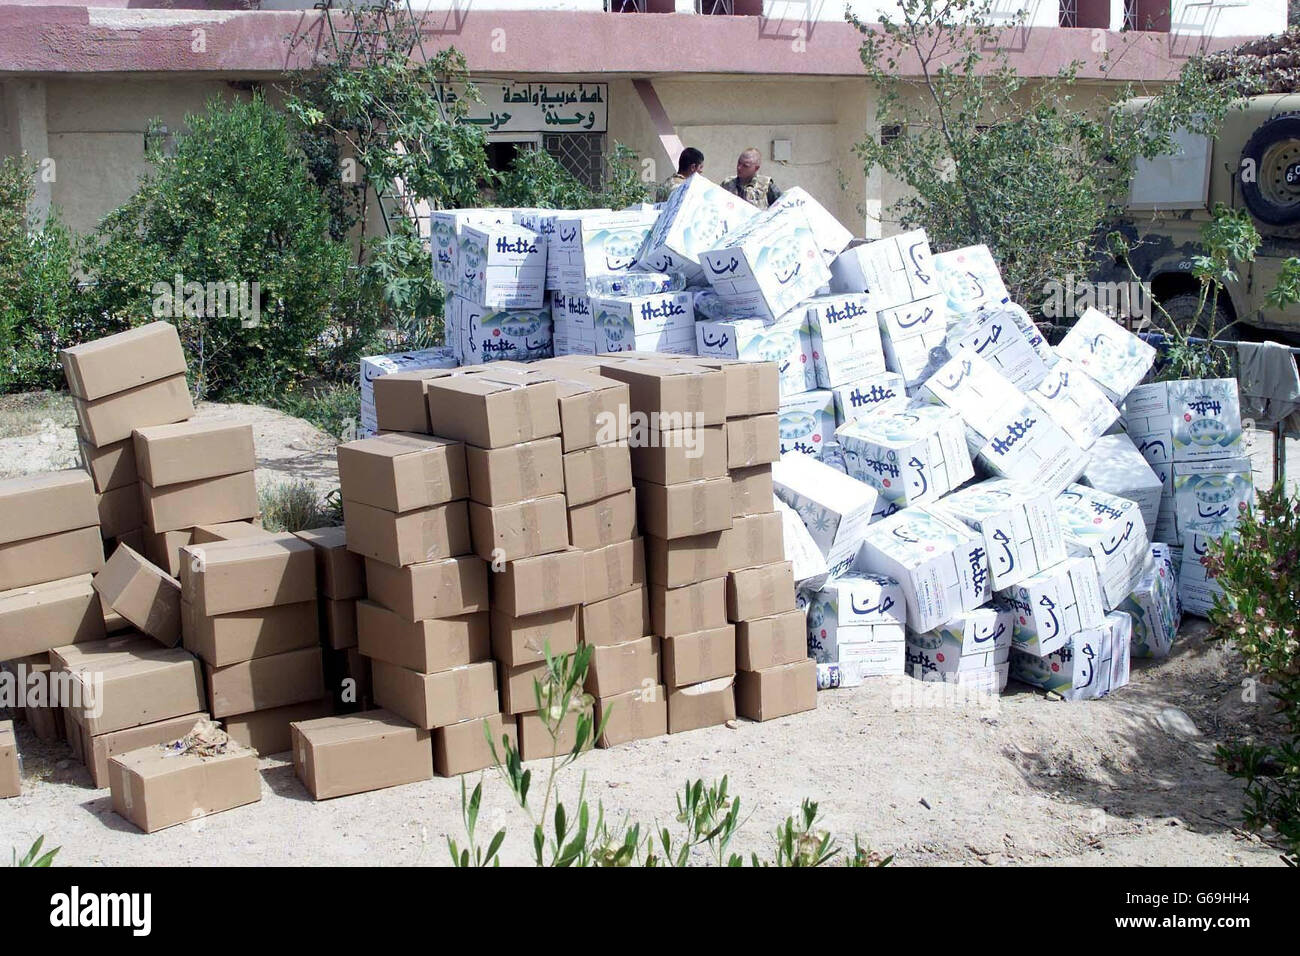 Les secours en attente d'être distribués par les Fusiliers royaux aux populations locales du sud de l'Irak. Banque D'Images